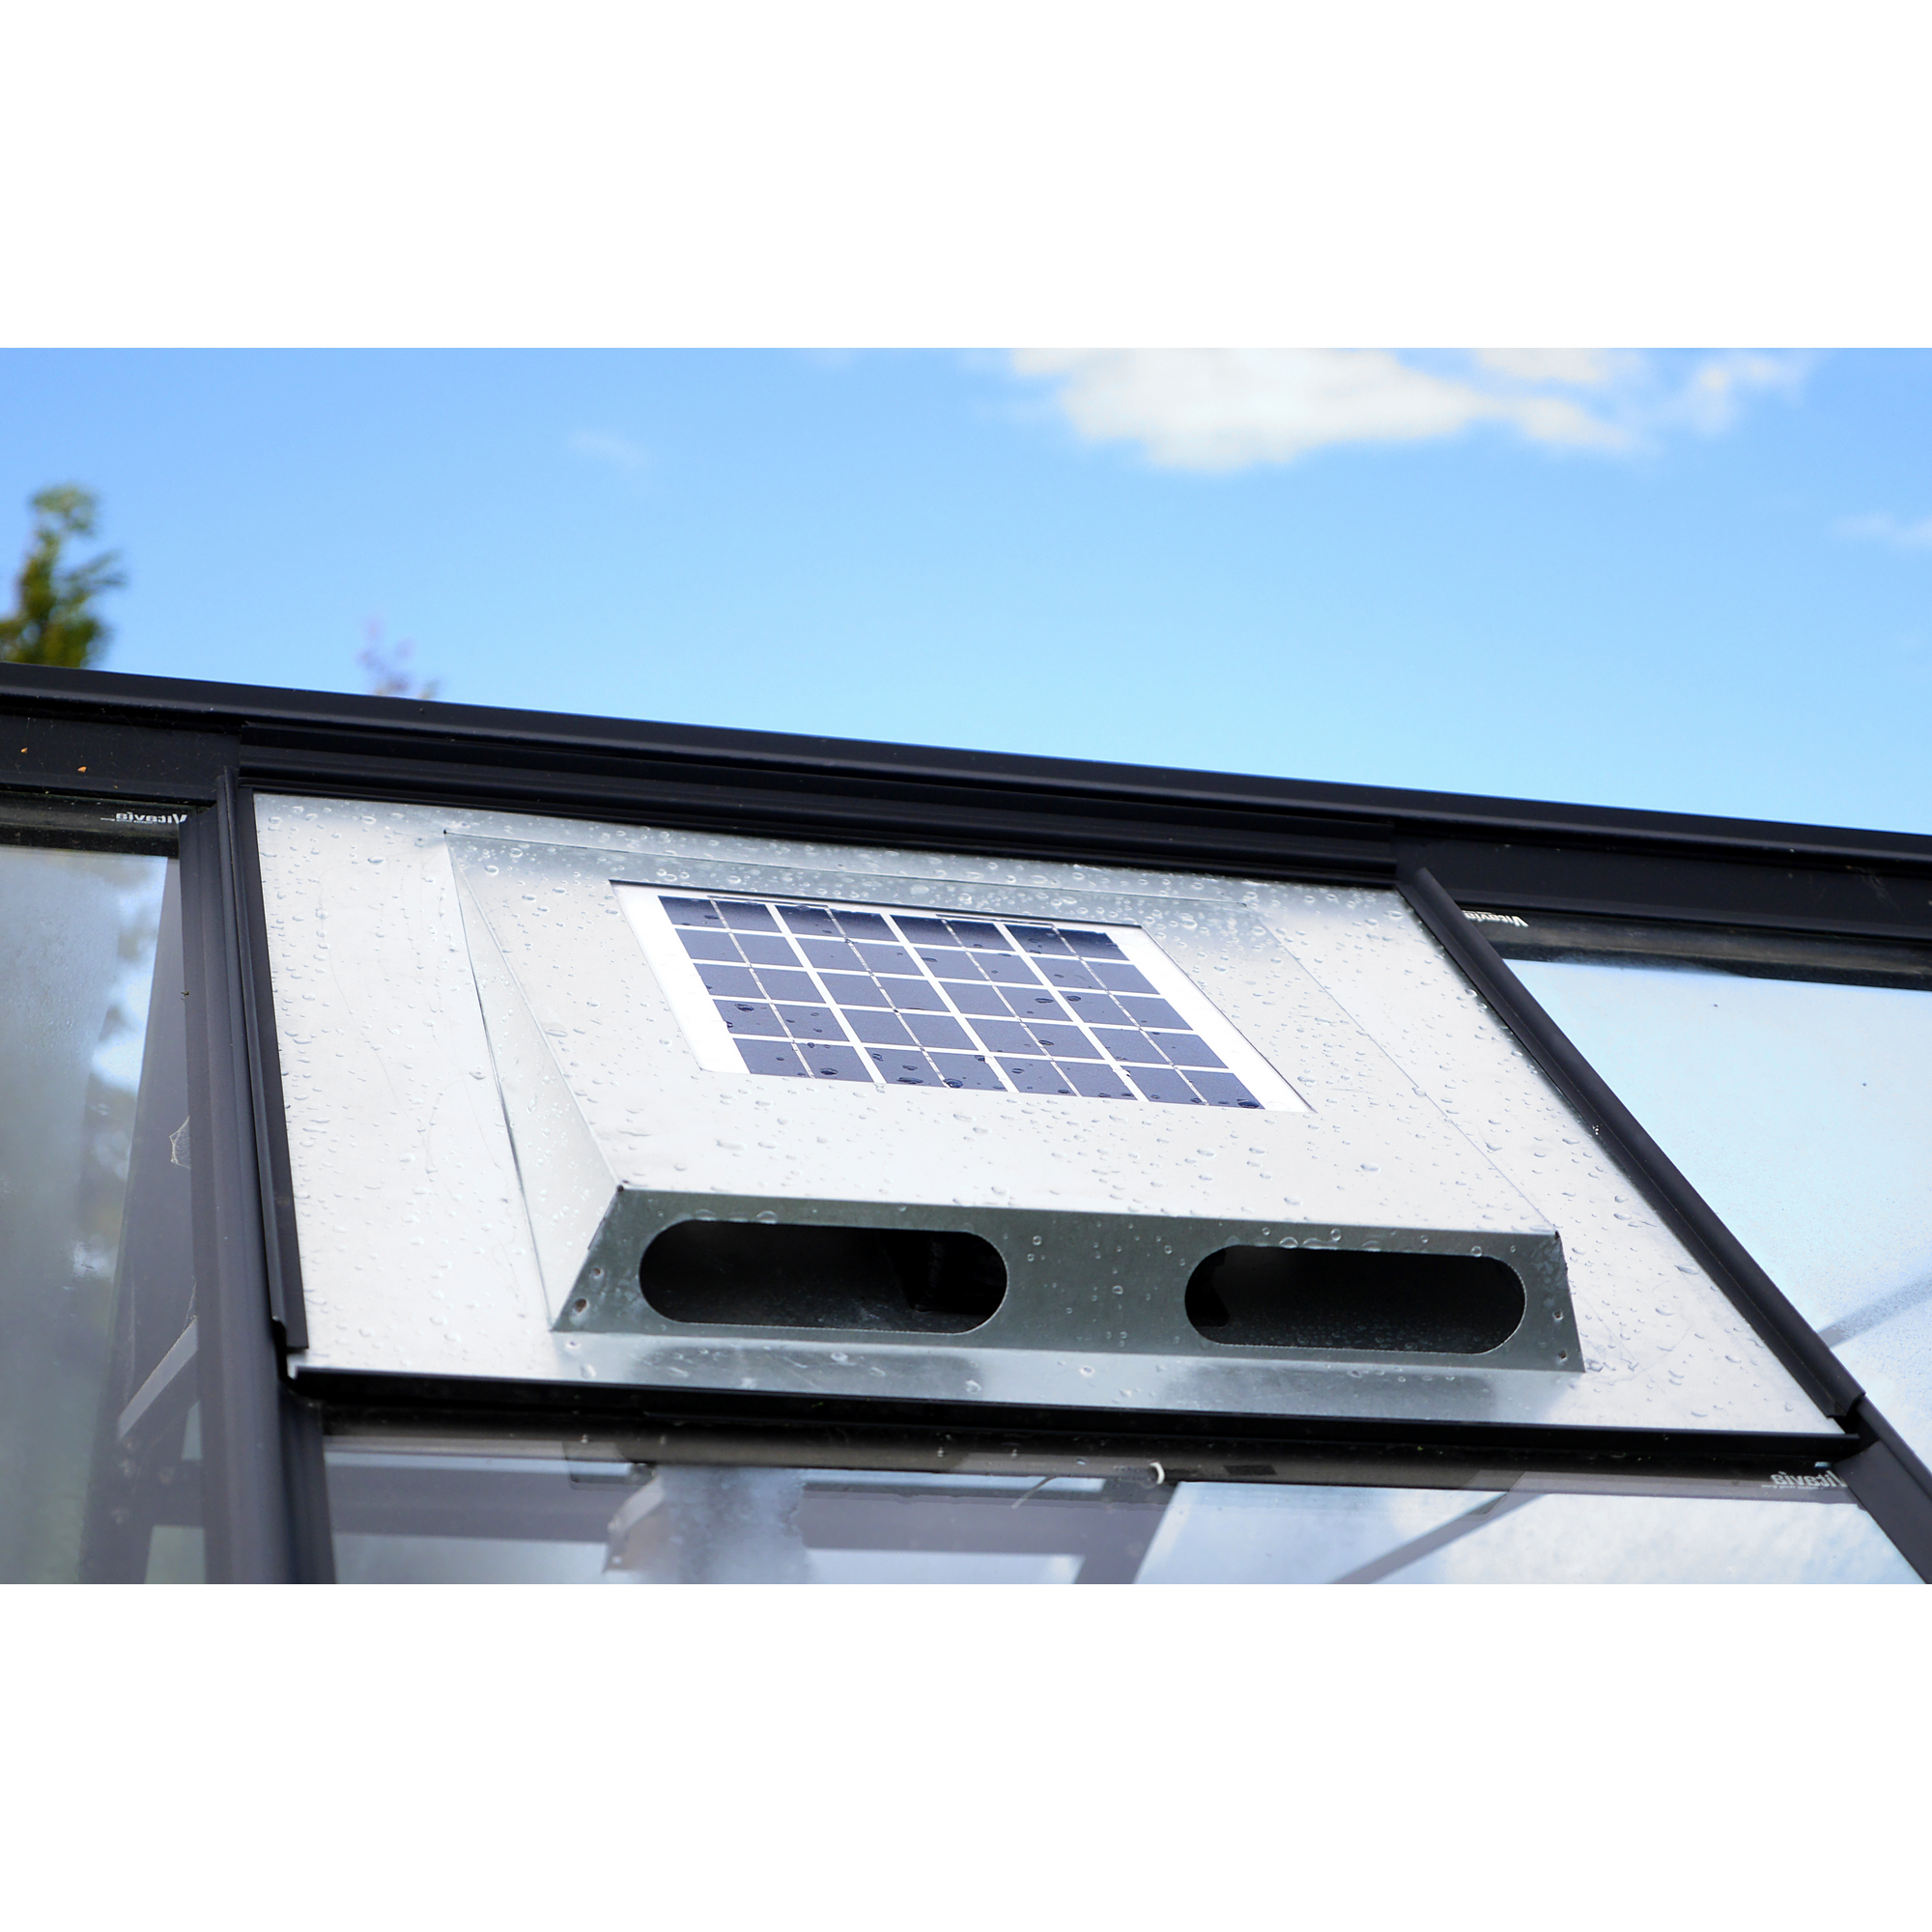 Solar-Dachventilator für Gewächshäuser 61 x 61 x 5,5 cm + product picture